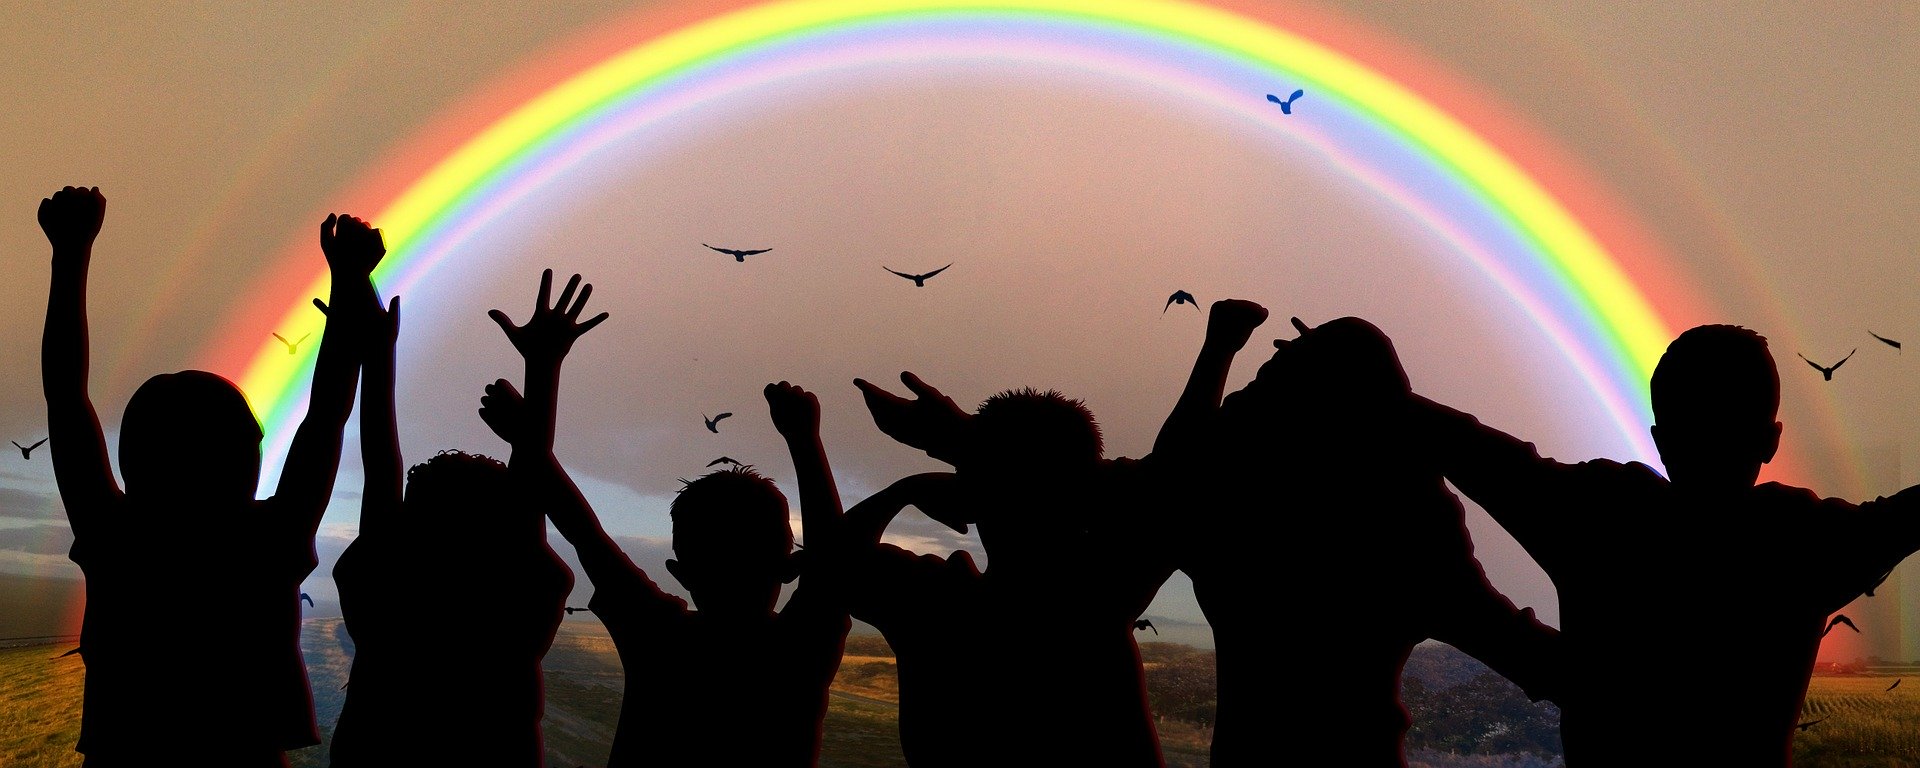 Unser Regenbogen für Glück und Zuversicht